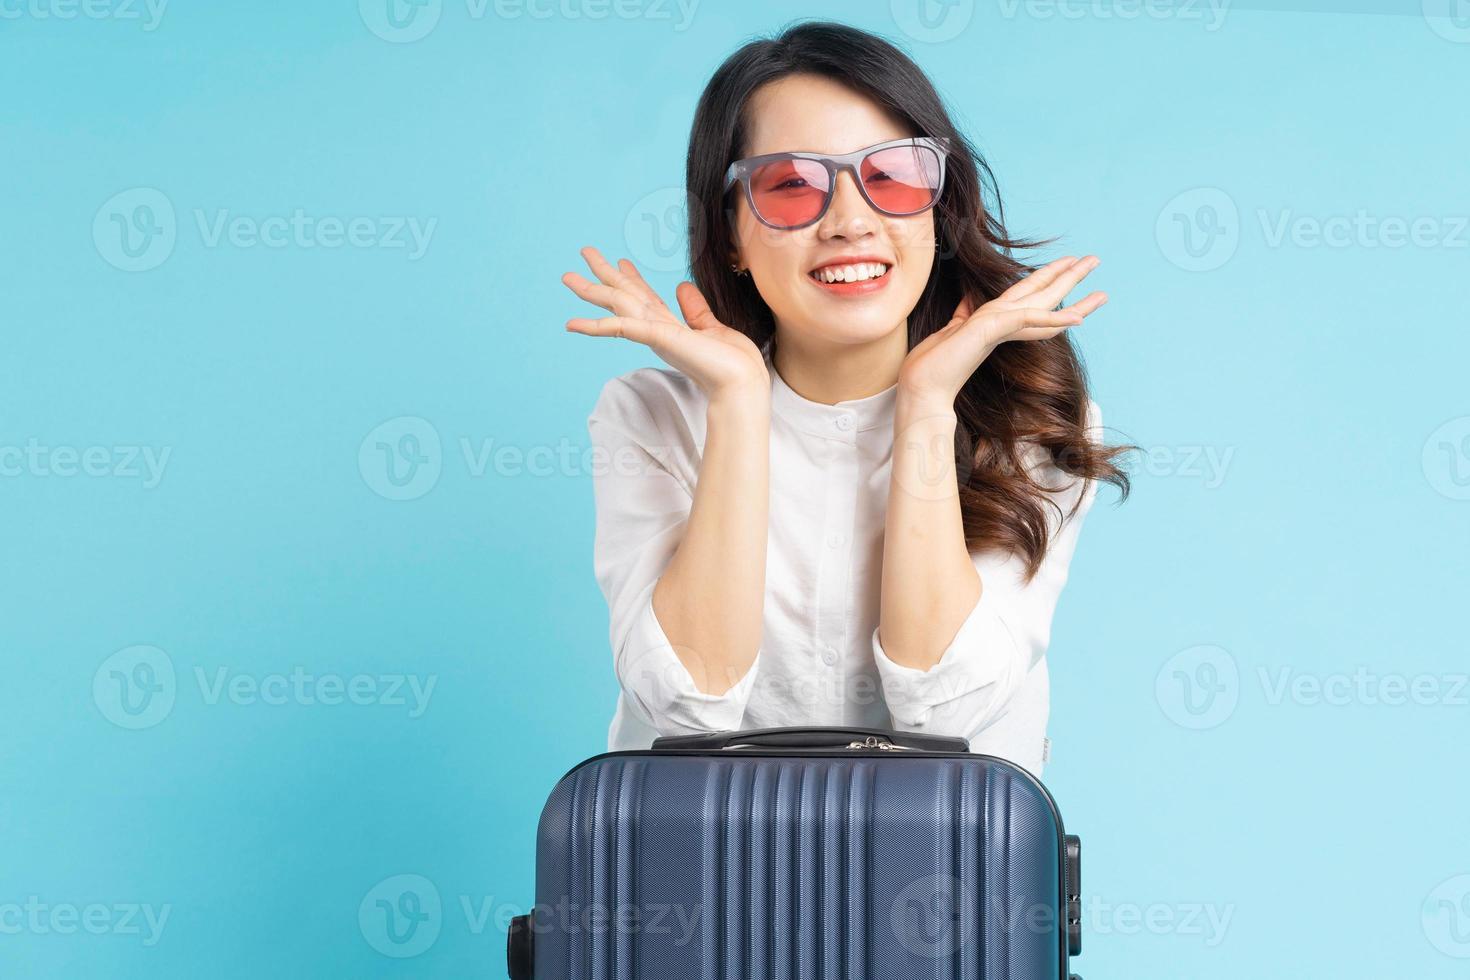 Hermosa mujer asiática sentada posando junto a la maleta y preparándose para viajar foto